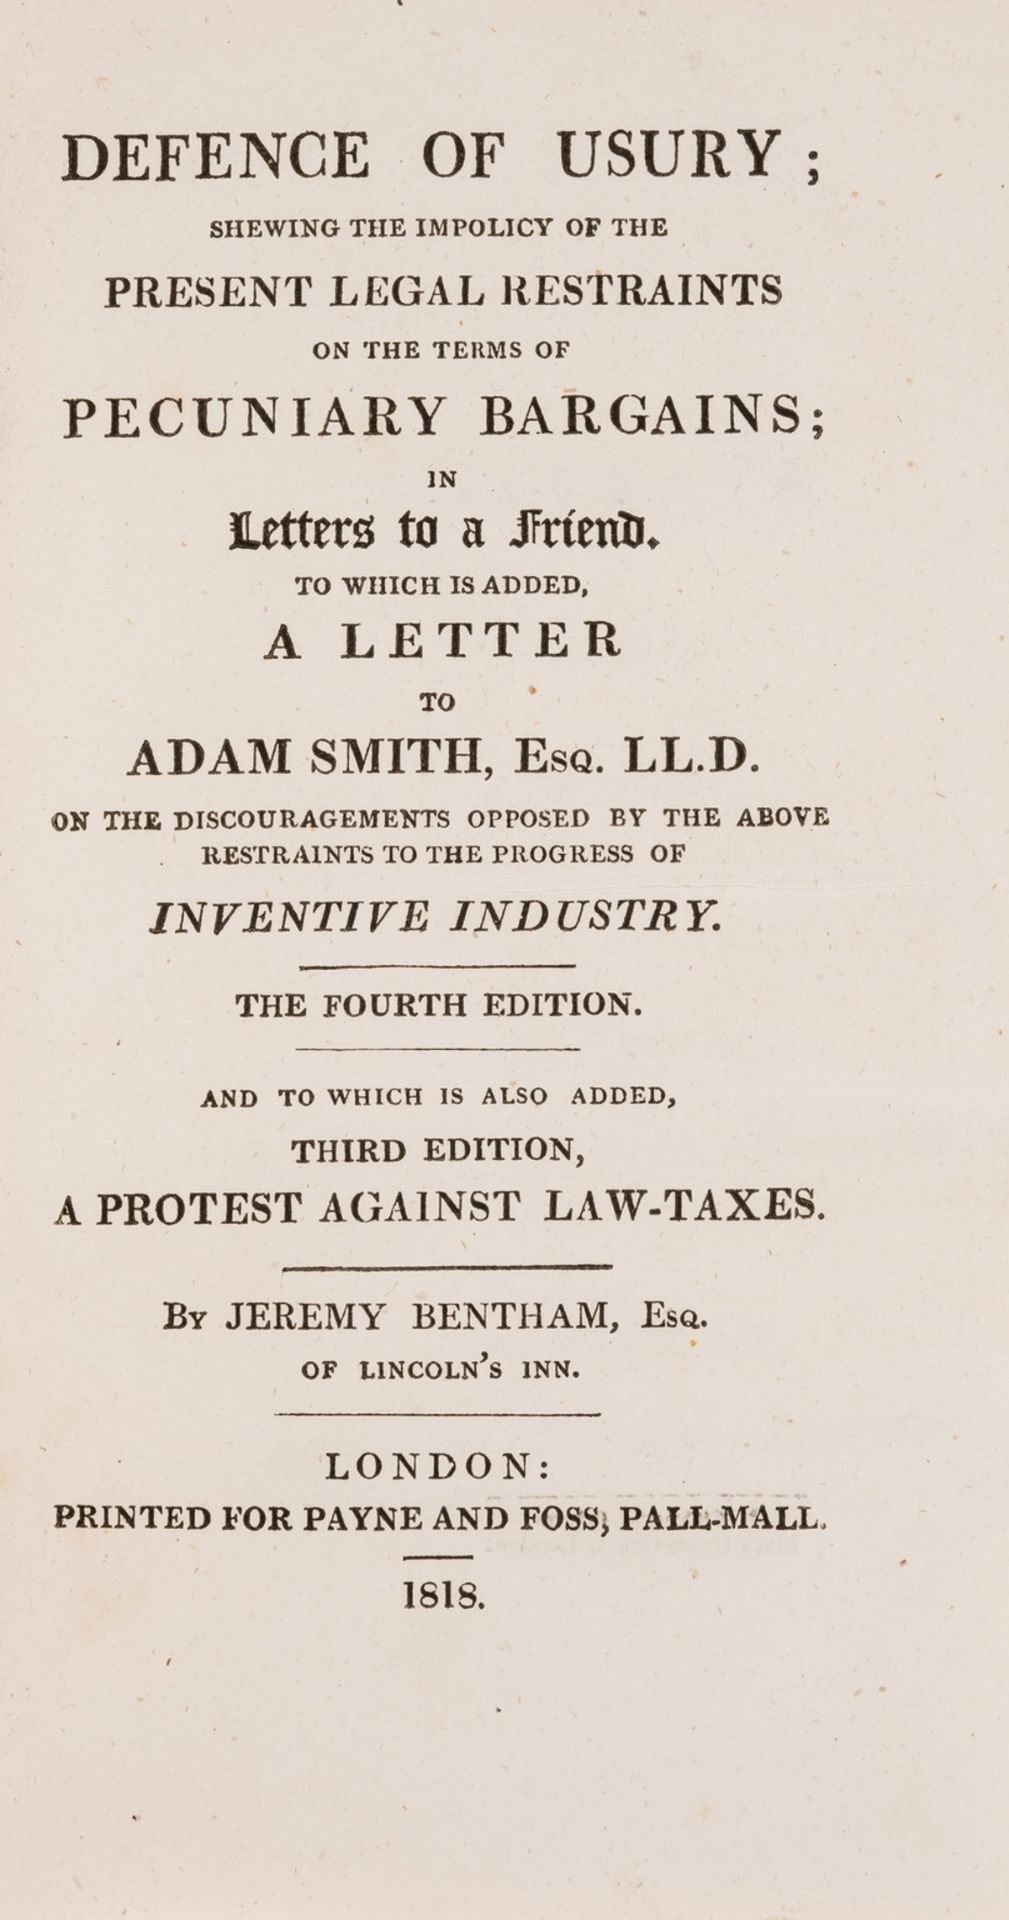 Economics.- Bentham (Jeremy) Defence of Usury, fourth edition, 1818.